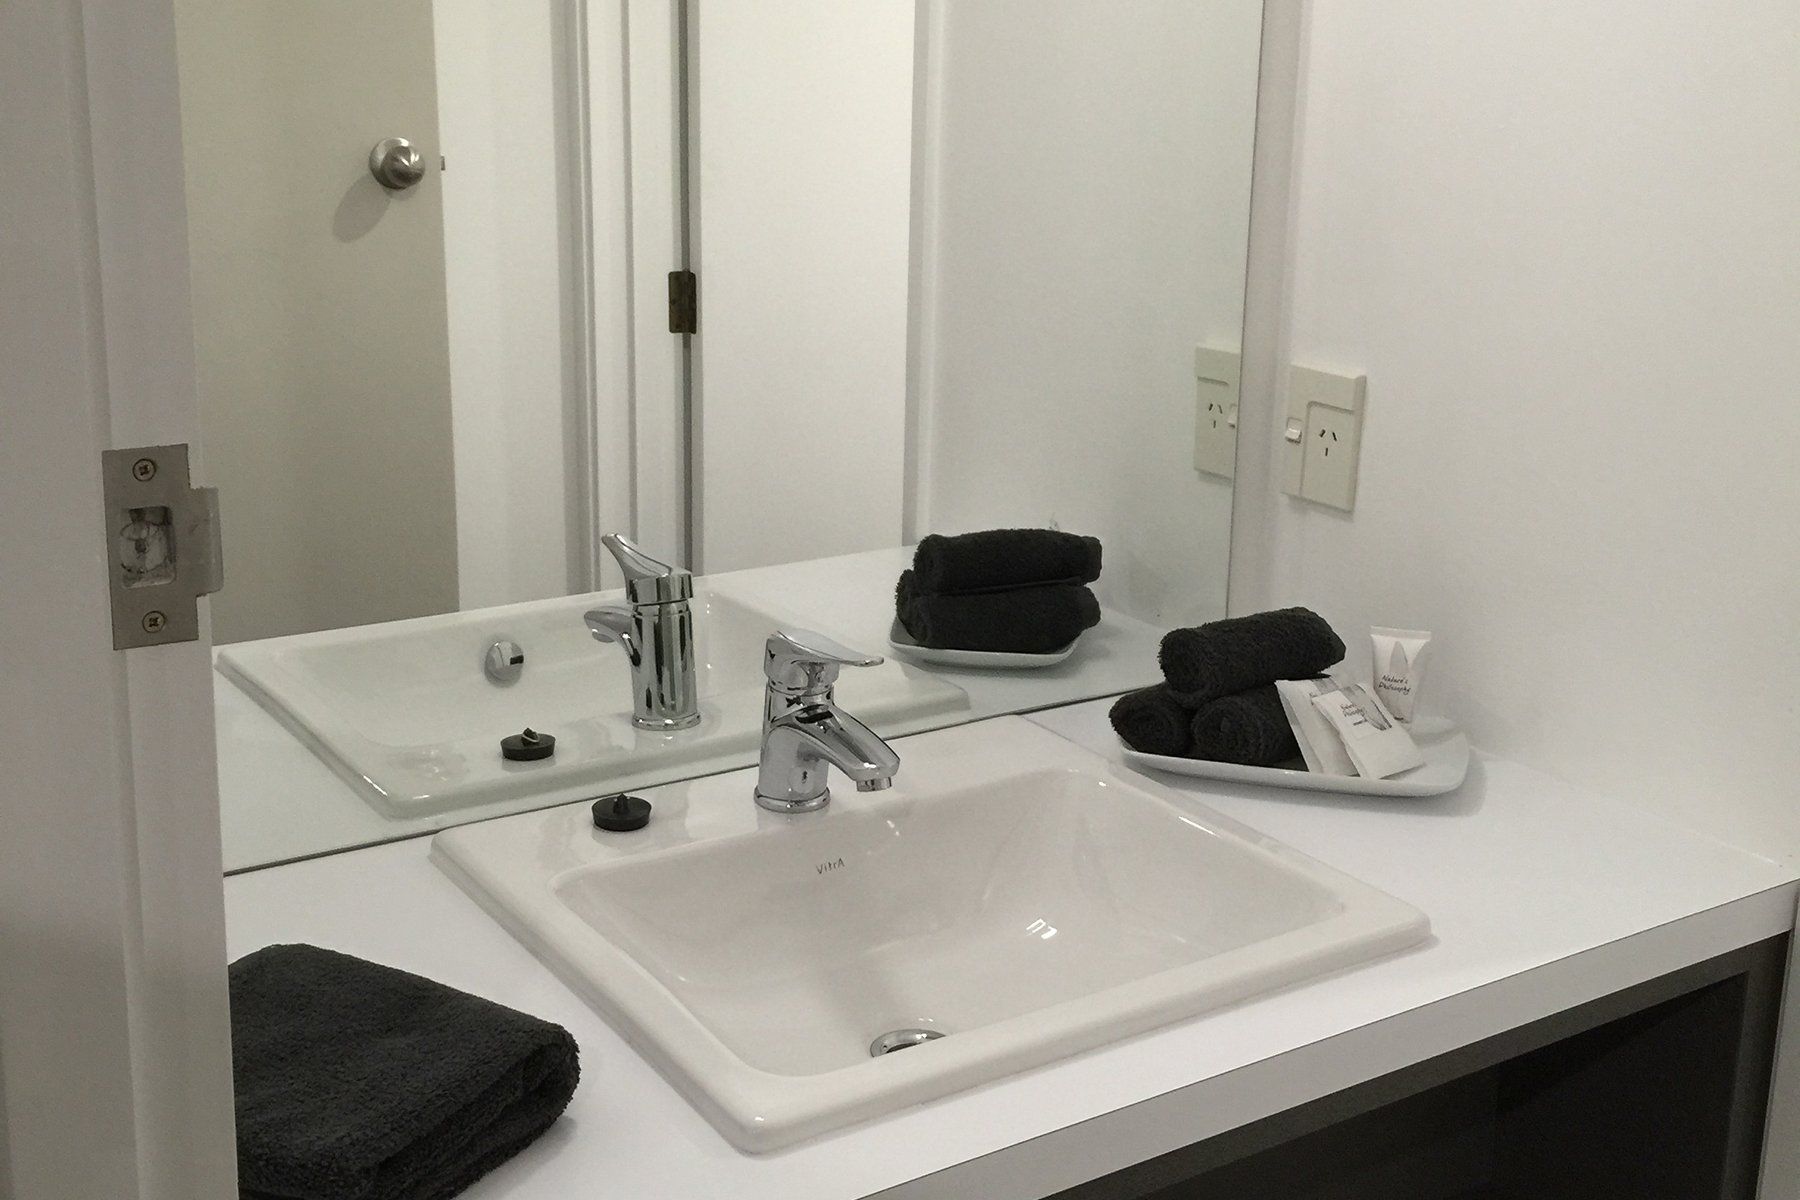 Two bedroom bathroom vanity